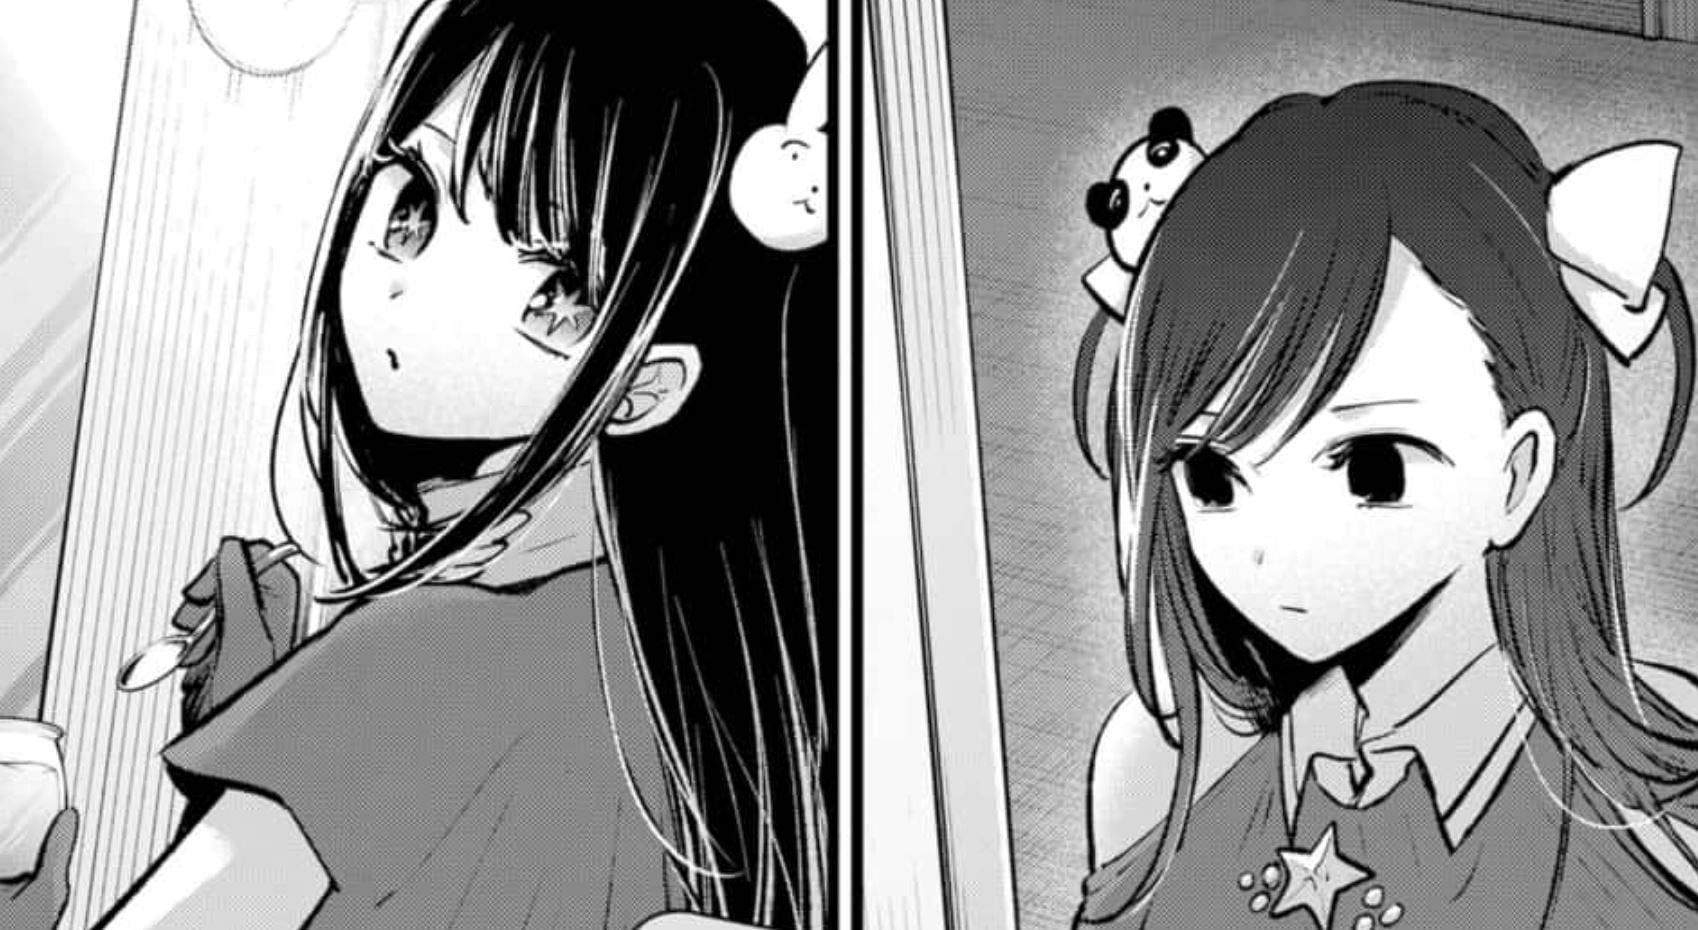 Ruby as Ai and Kana as Nino in the Oshi no Ko manga (Image via Shueisha)